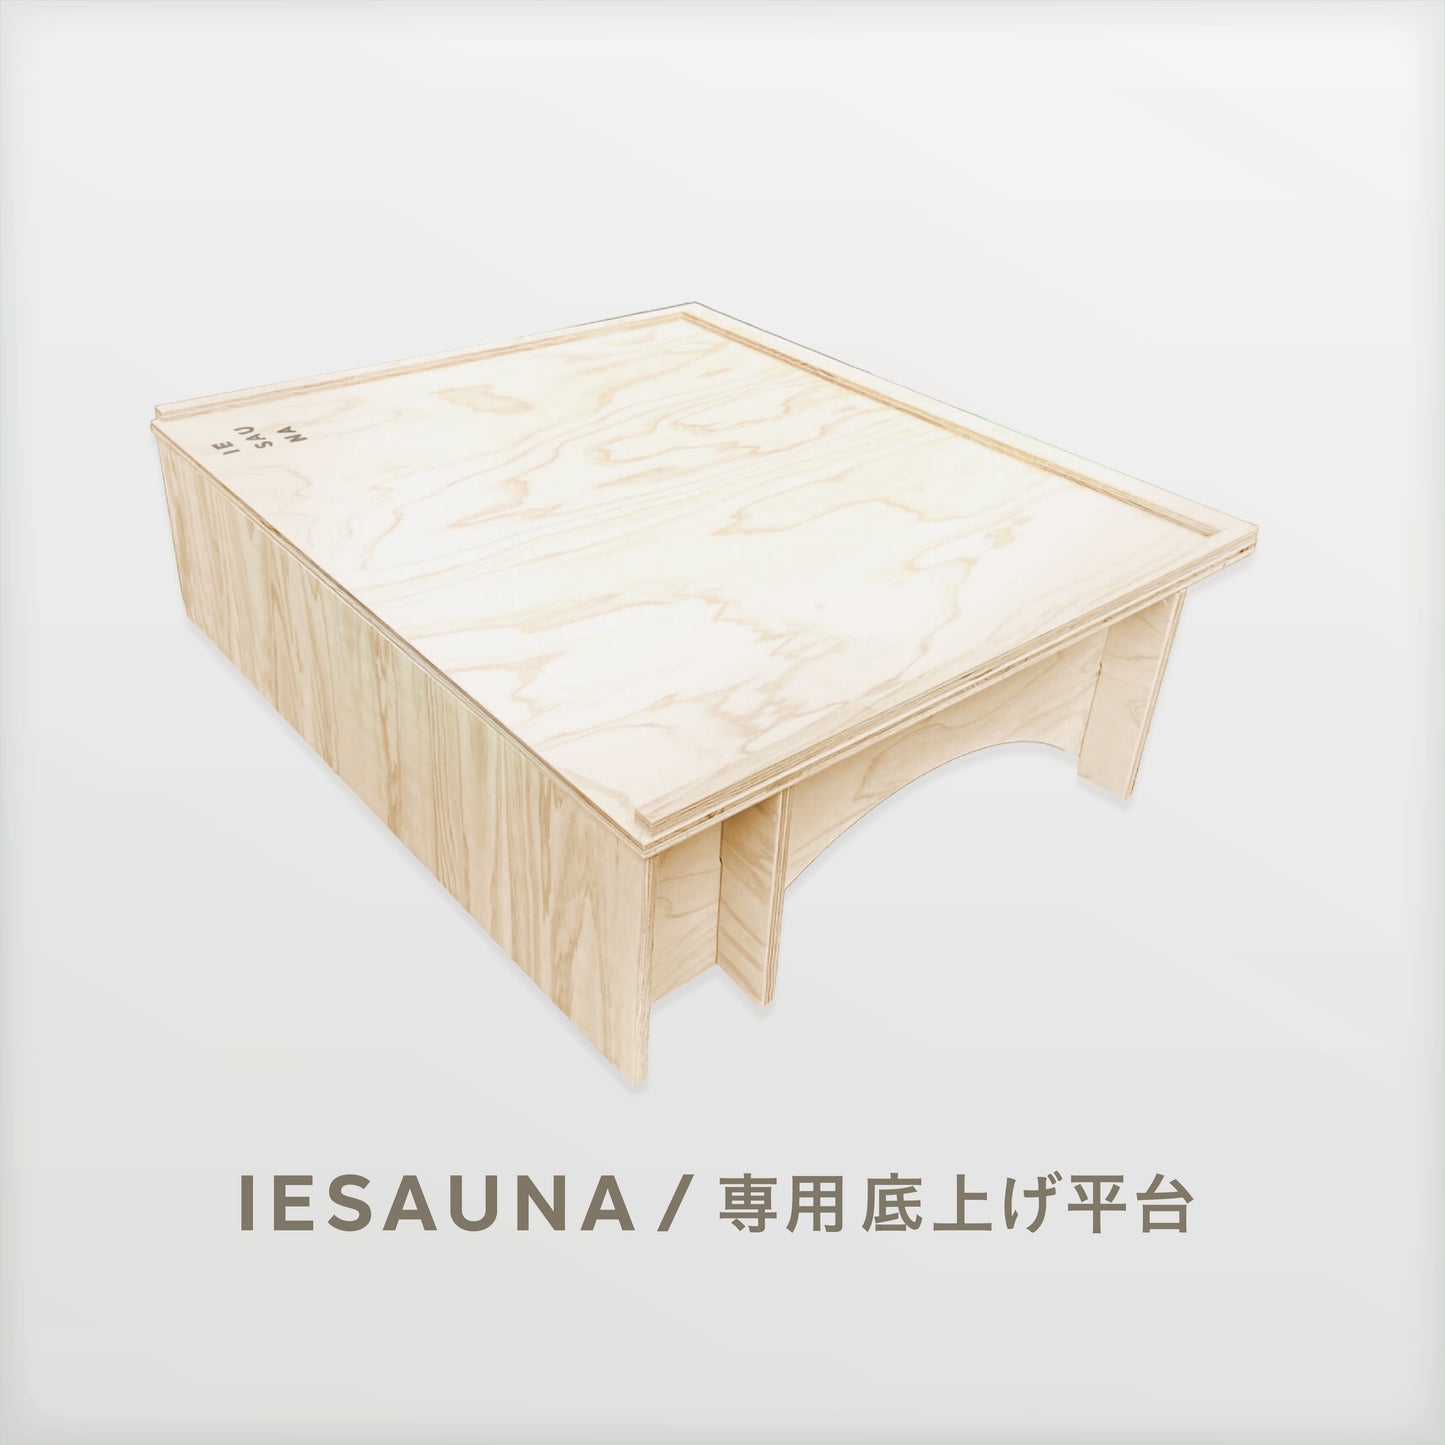 IESAUNA Premium Set／IESAUNA用のストーブを囲むギアセット